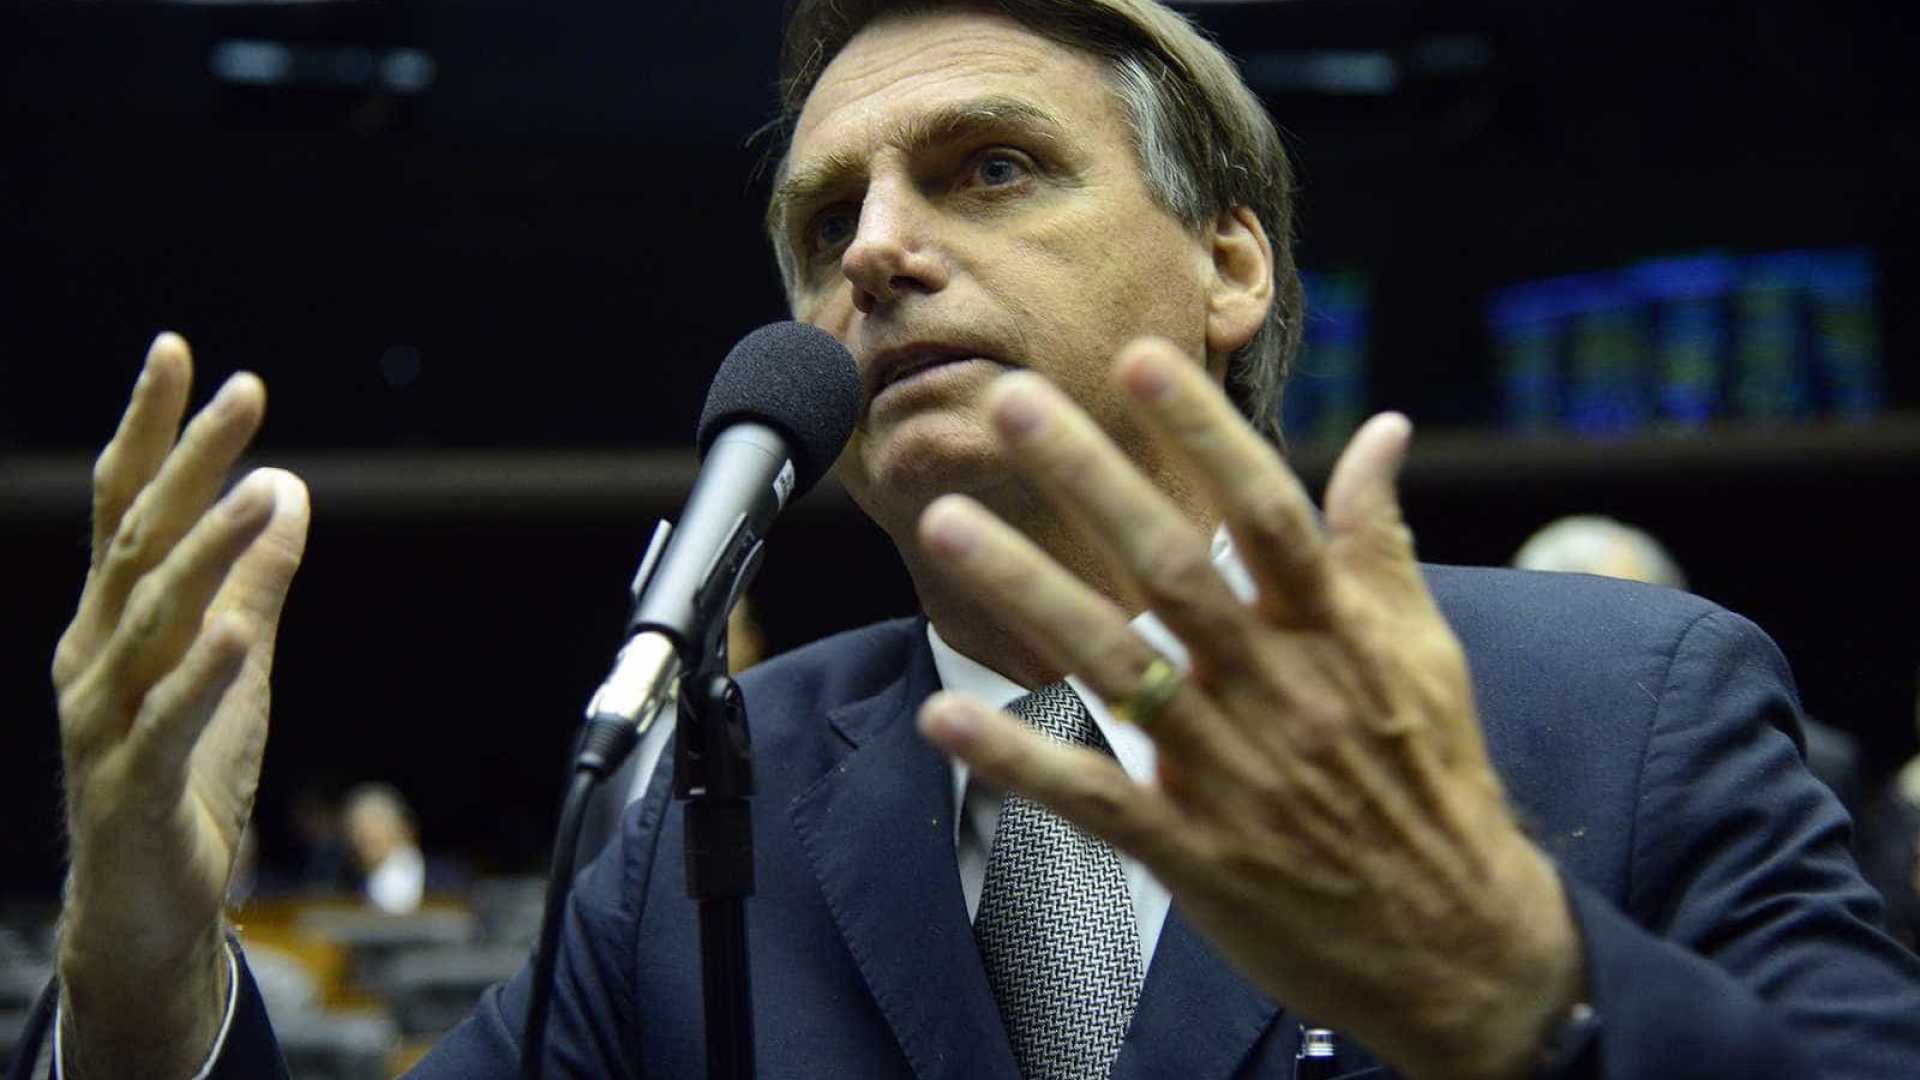 Pobre não sabe fazer nada, disse Bolsonaro quando era vereador do Rio